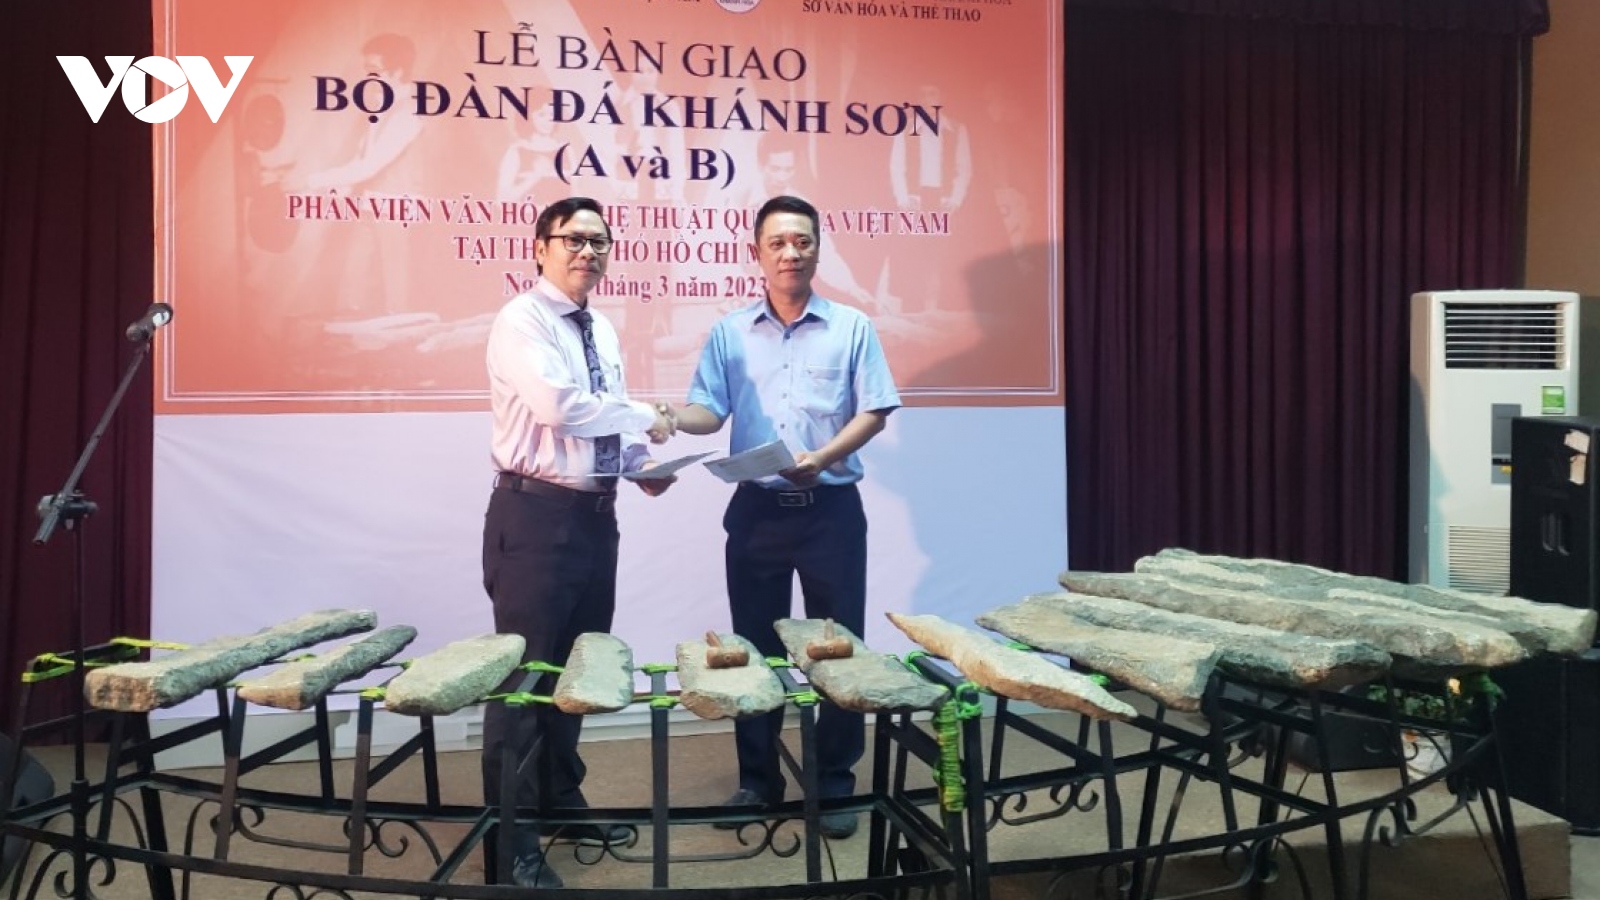 Sau hơn 40 năm, 2 bộ đàn đá Khánh Sơn được giao trở lại tỉnh Khánh Hòa